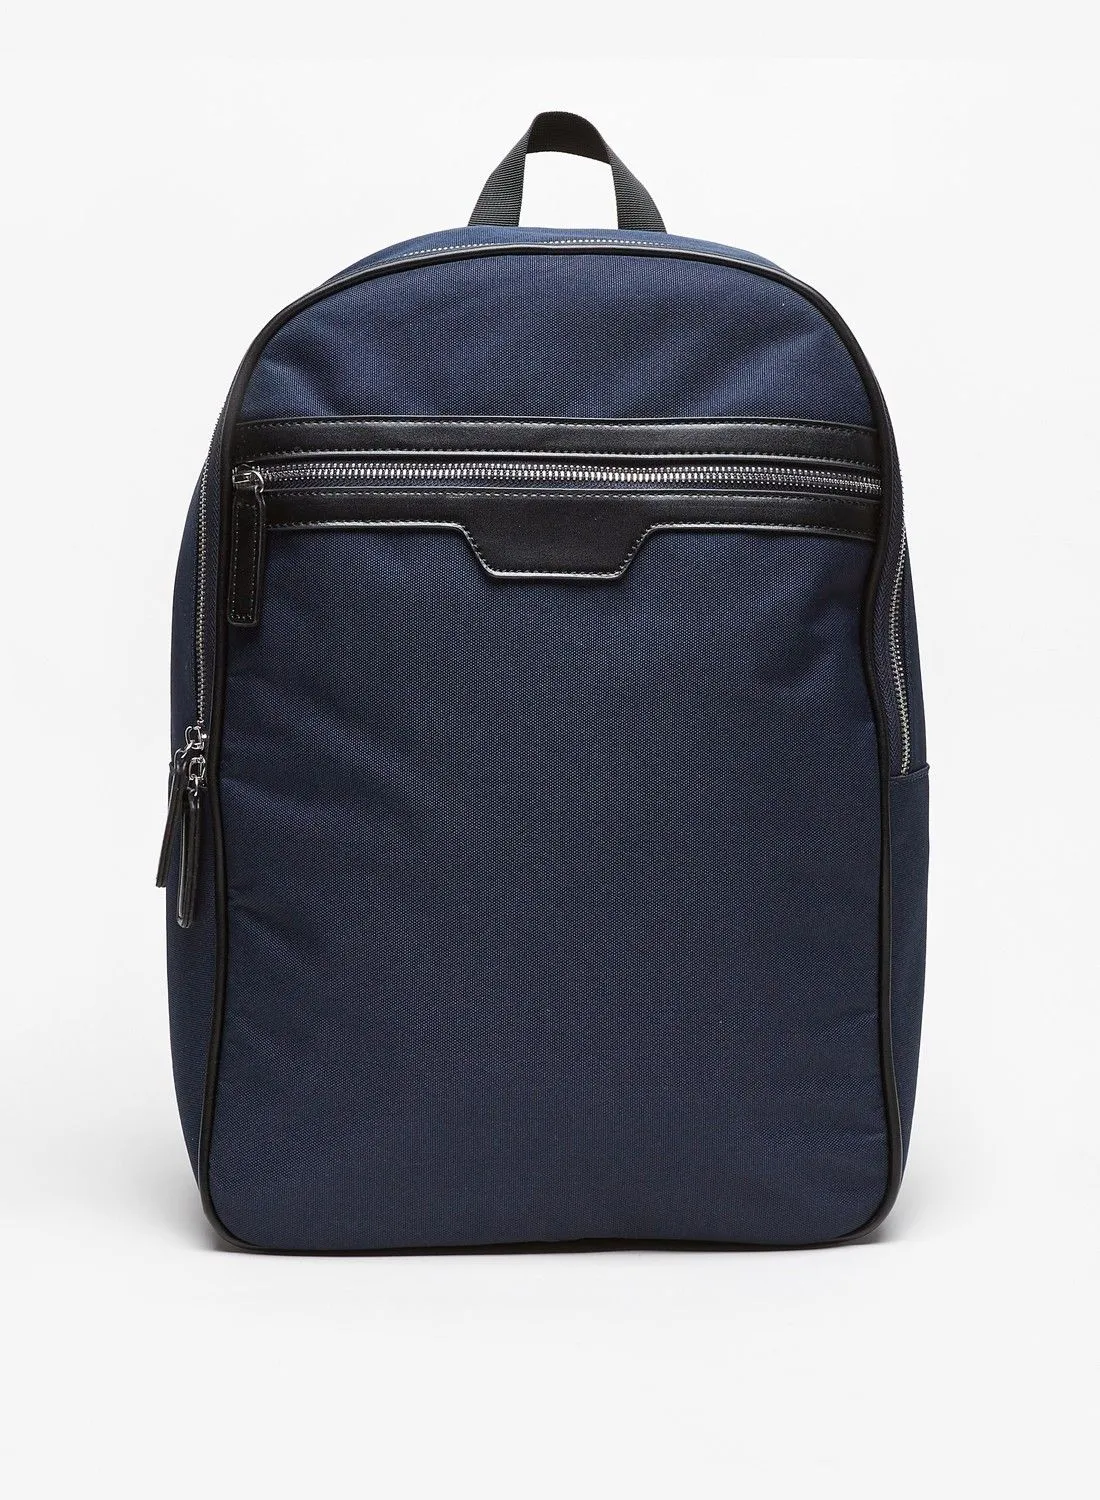 shoexpress Solid Backpack with Adjustable Shoulder Straps